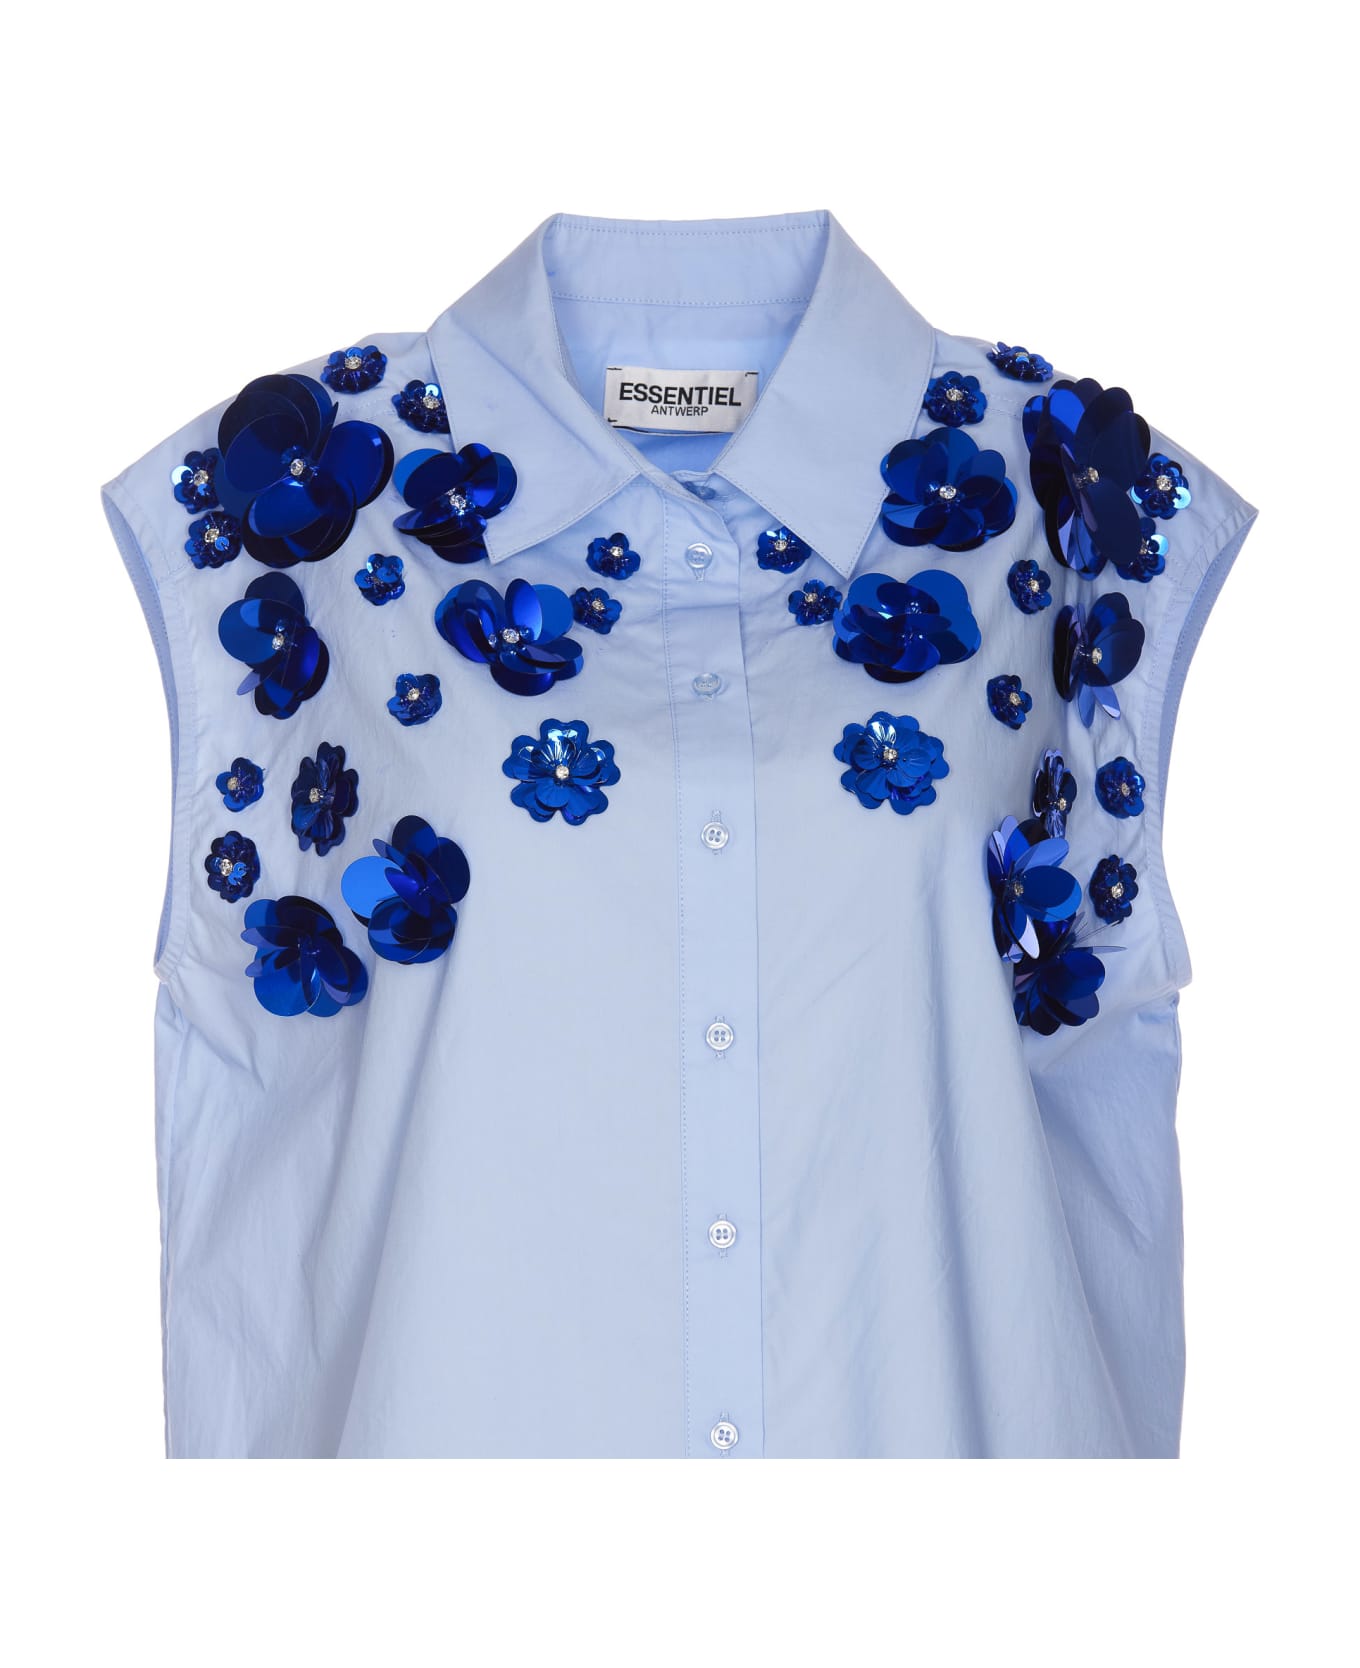 Essentiel Antwerp Fight Embroidered Shirt - Azzurro シャツ